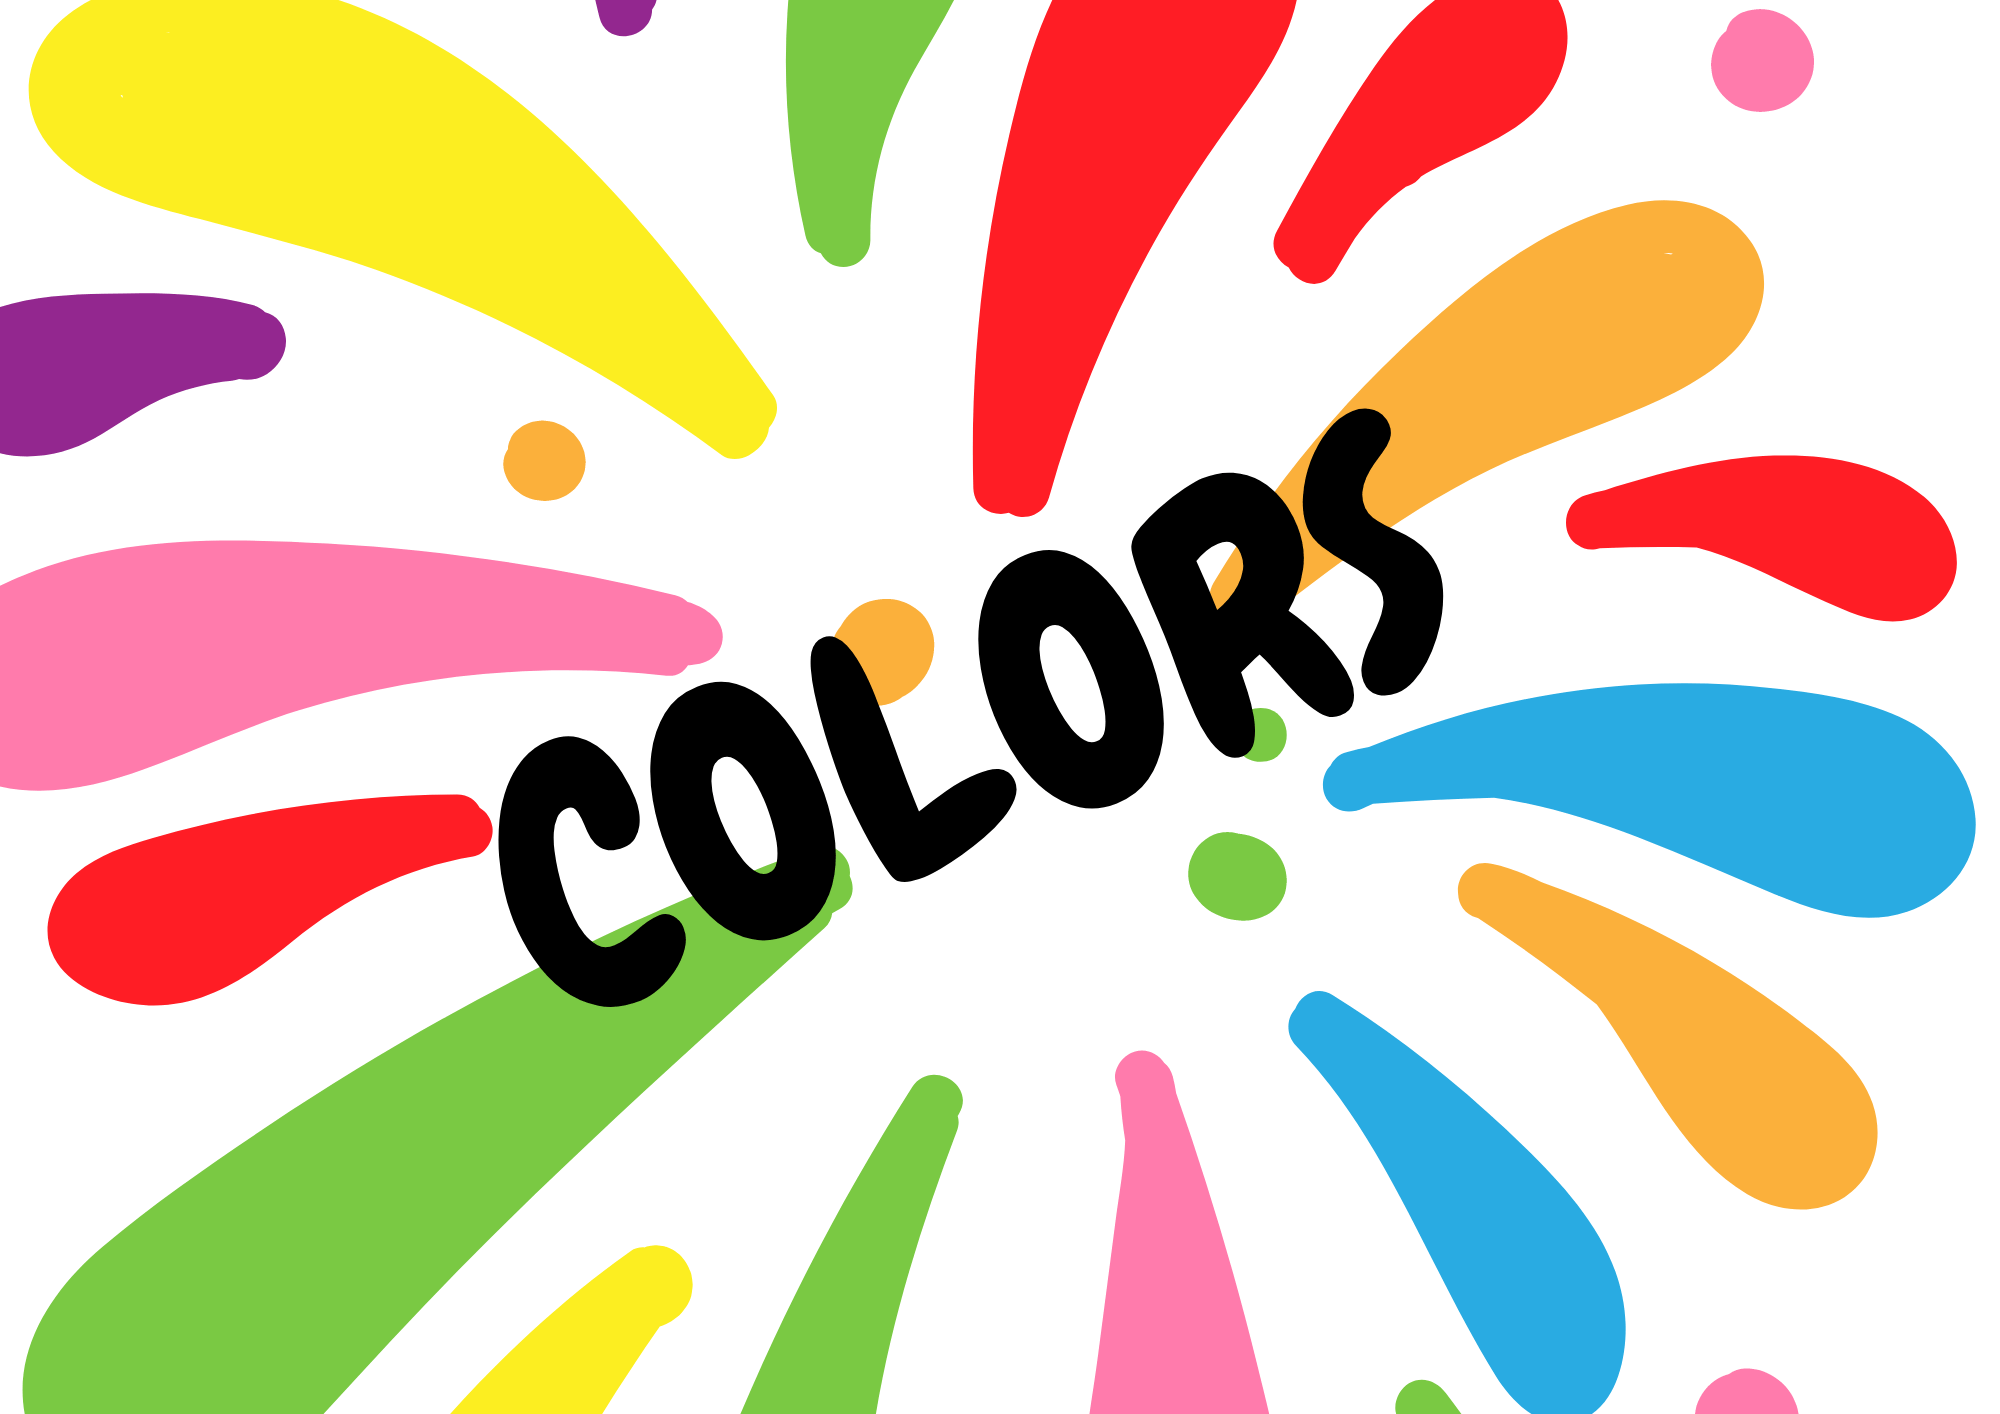 Colors - Class 2 - Quizizz